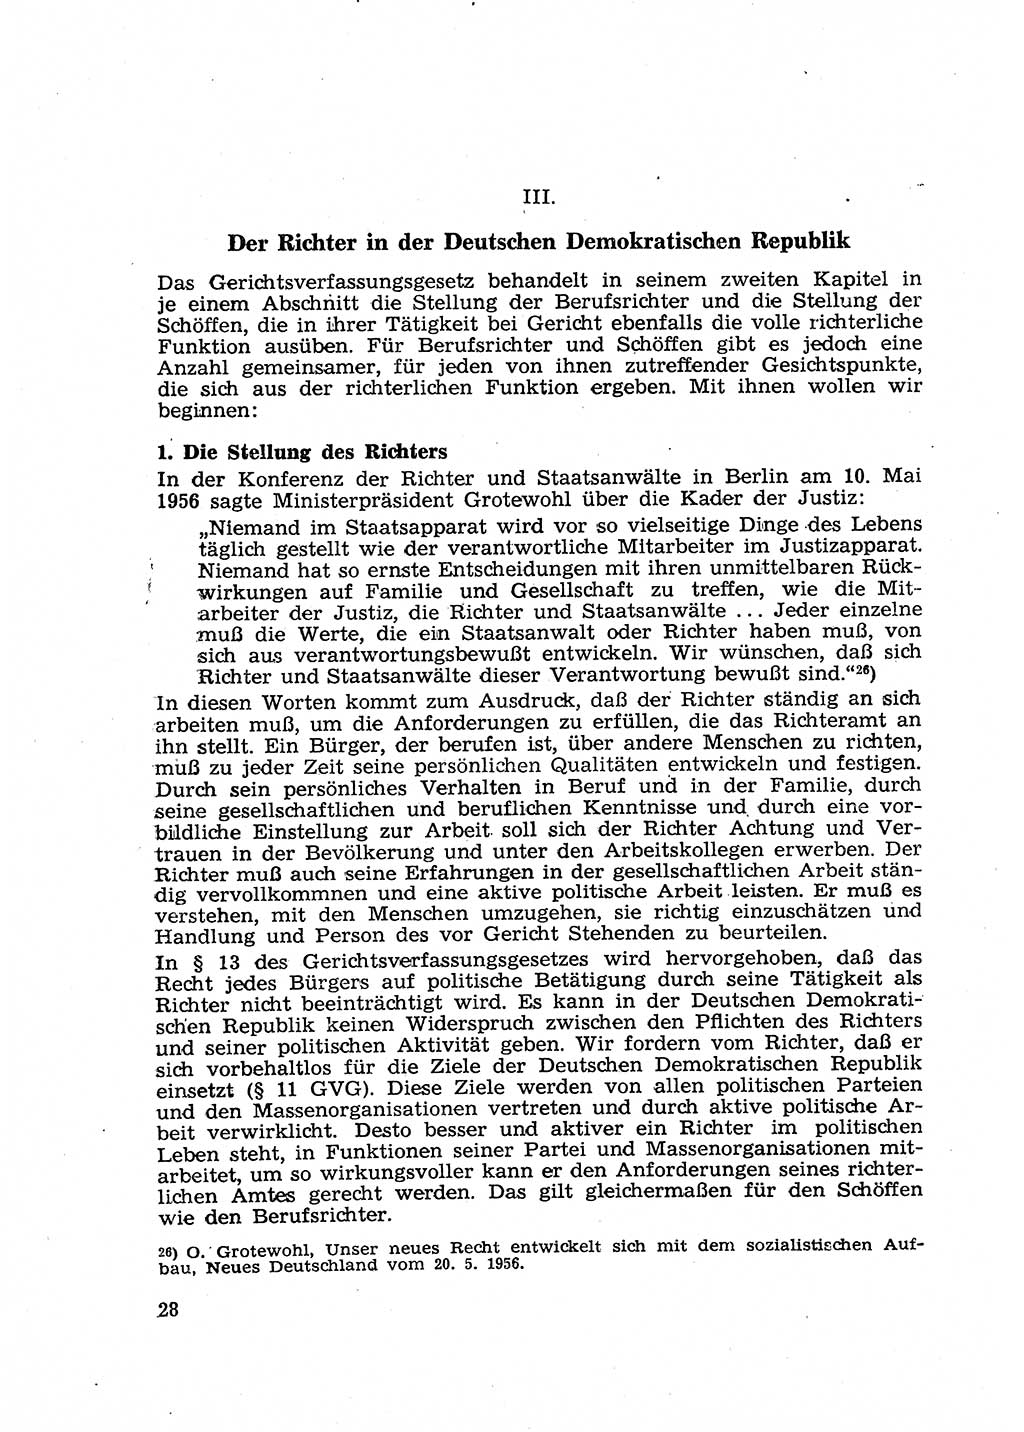 Gericht und Rechtsprechung in der Deutschen Demokratischen Republik (DDR) 1956, Seite 28 (Ger. Rechtspr. DDR 1956, S. 28)